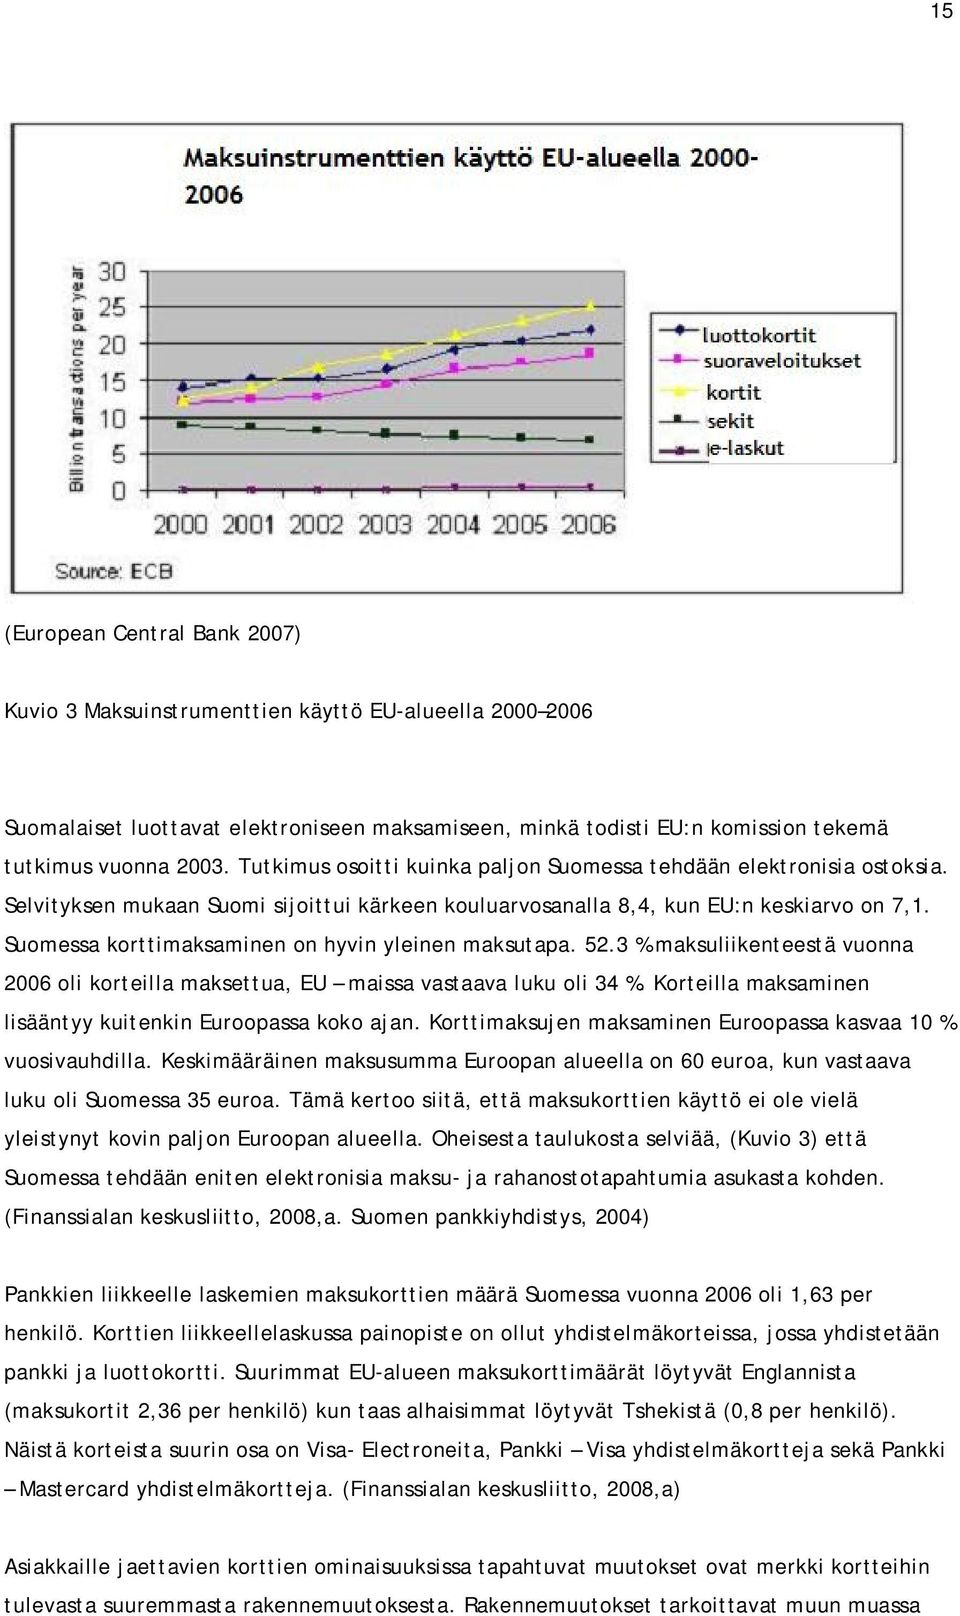 Suomessa korttimaksaminen on hyvin yleinen maksutapa. 52.3 % maksuliikenteestä vuonna 2006 oli korteilla maksettua, EU maissa vastaava luku oli 34 %.